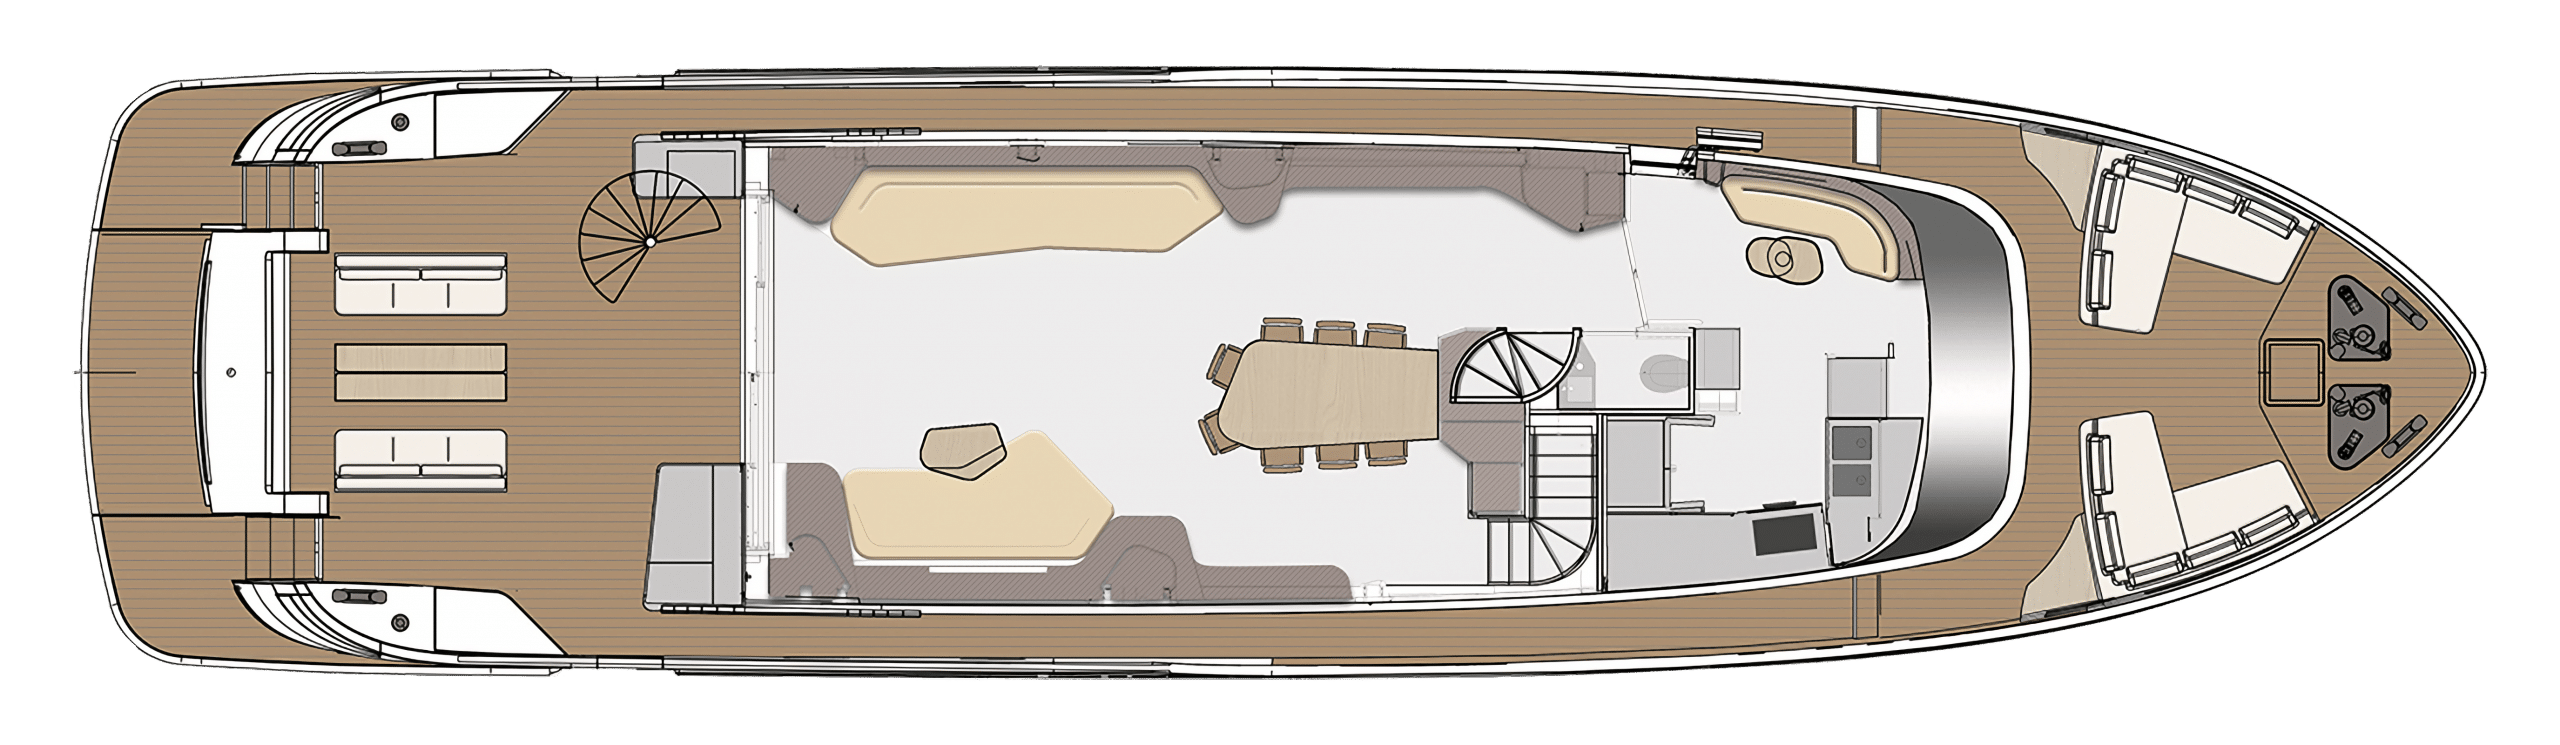 azimut-magellano-25-metri-layout-2